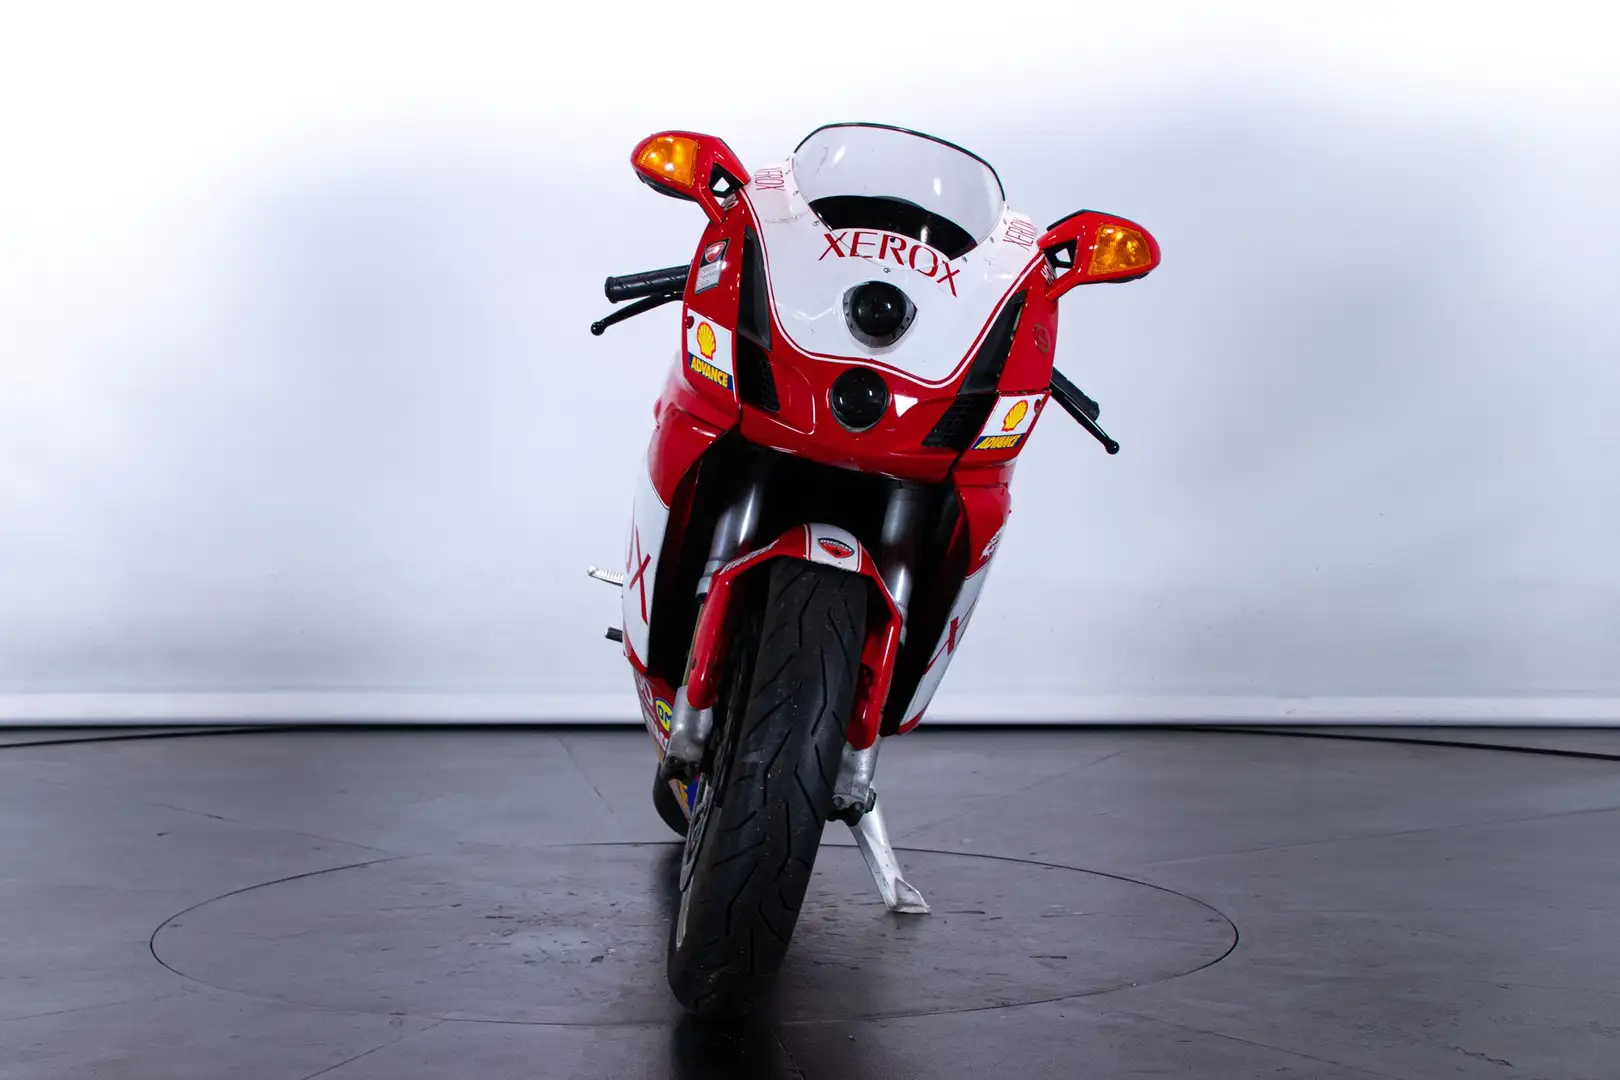 Ducati 999 Rood - 2